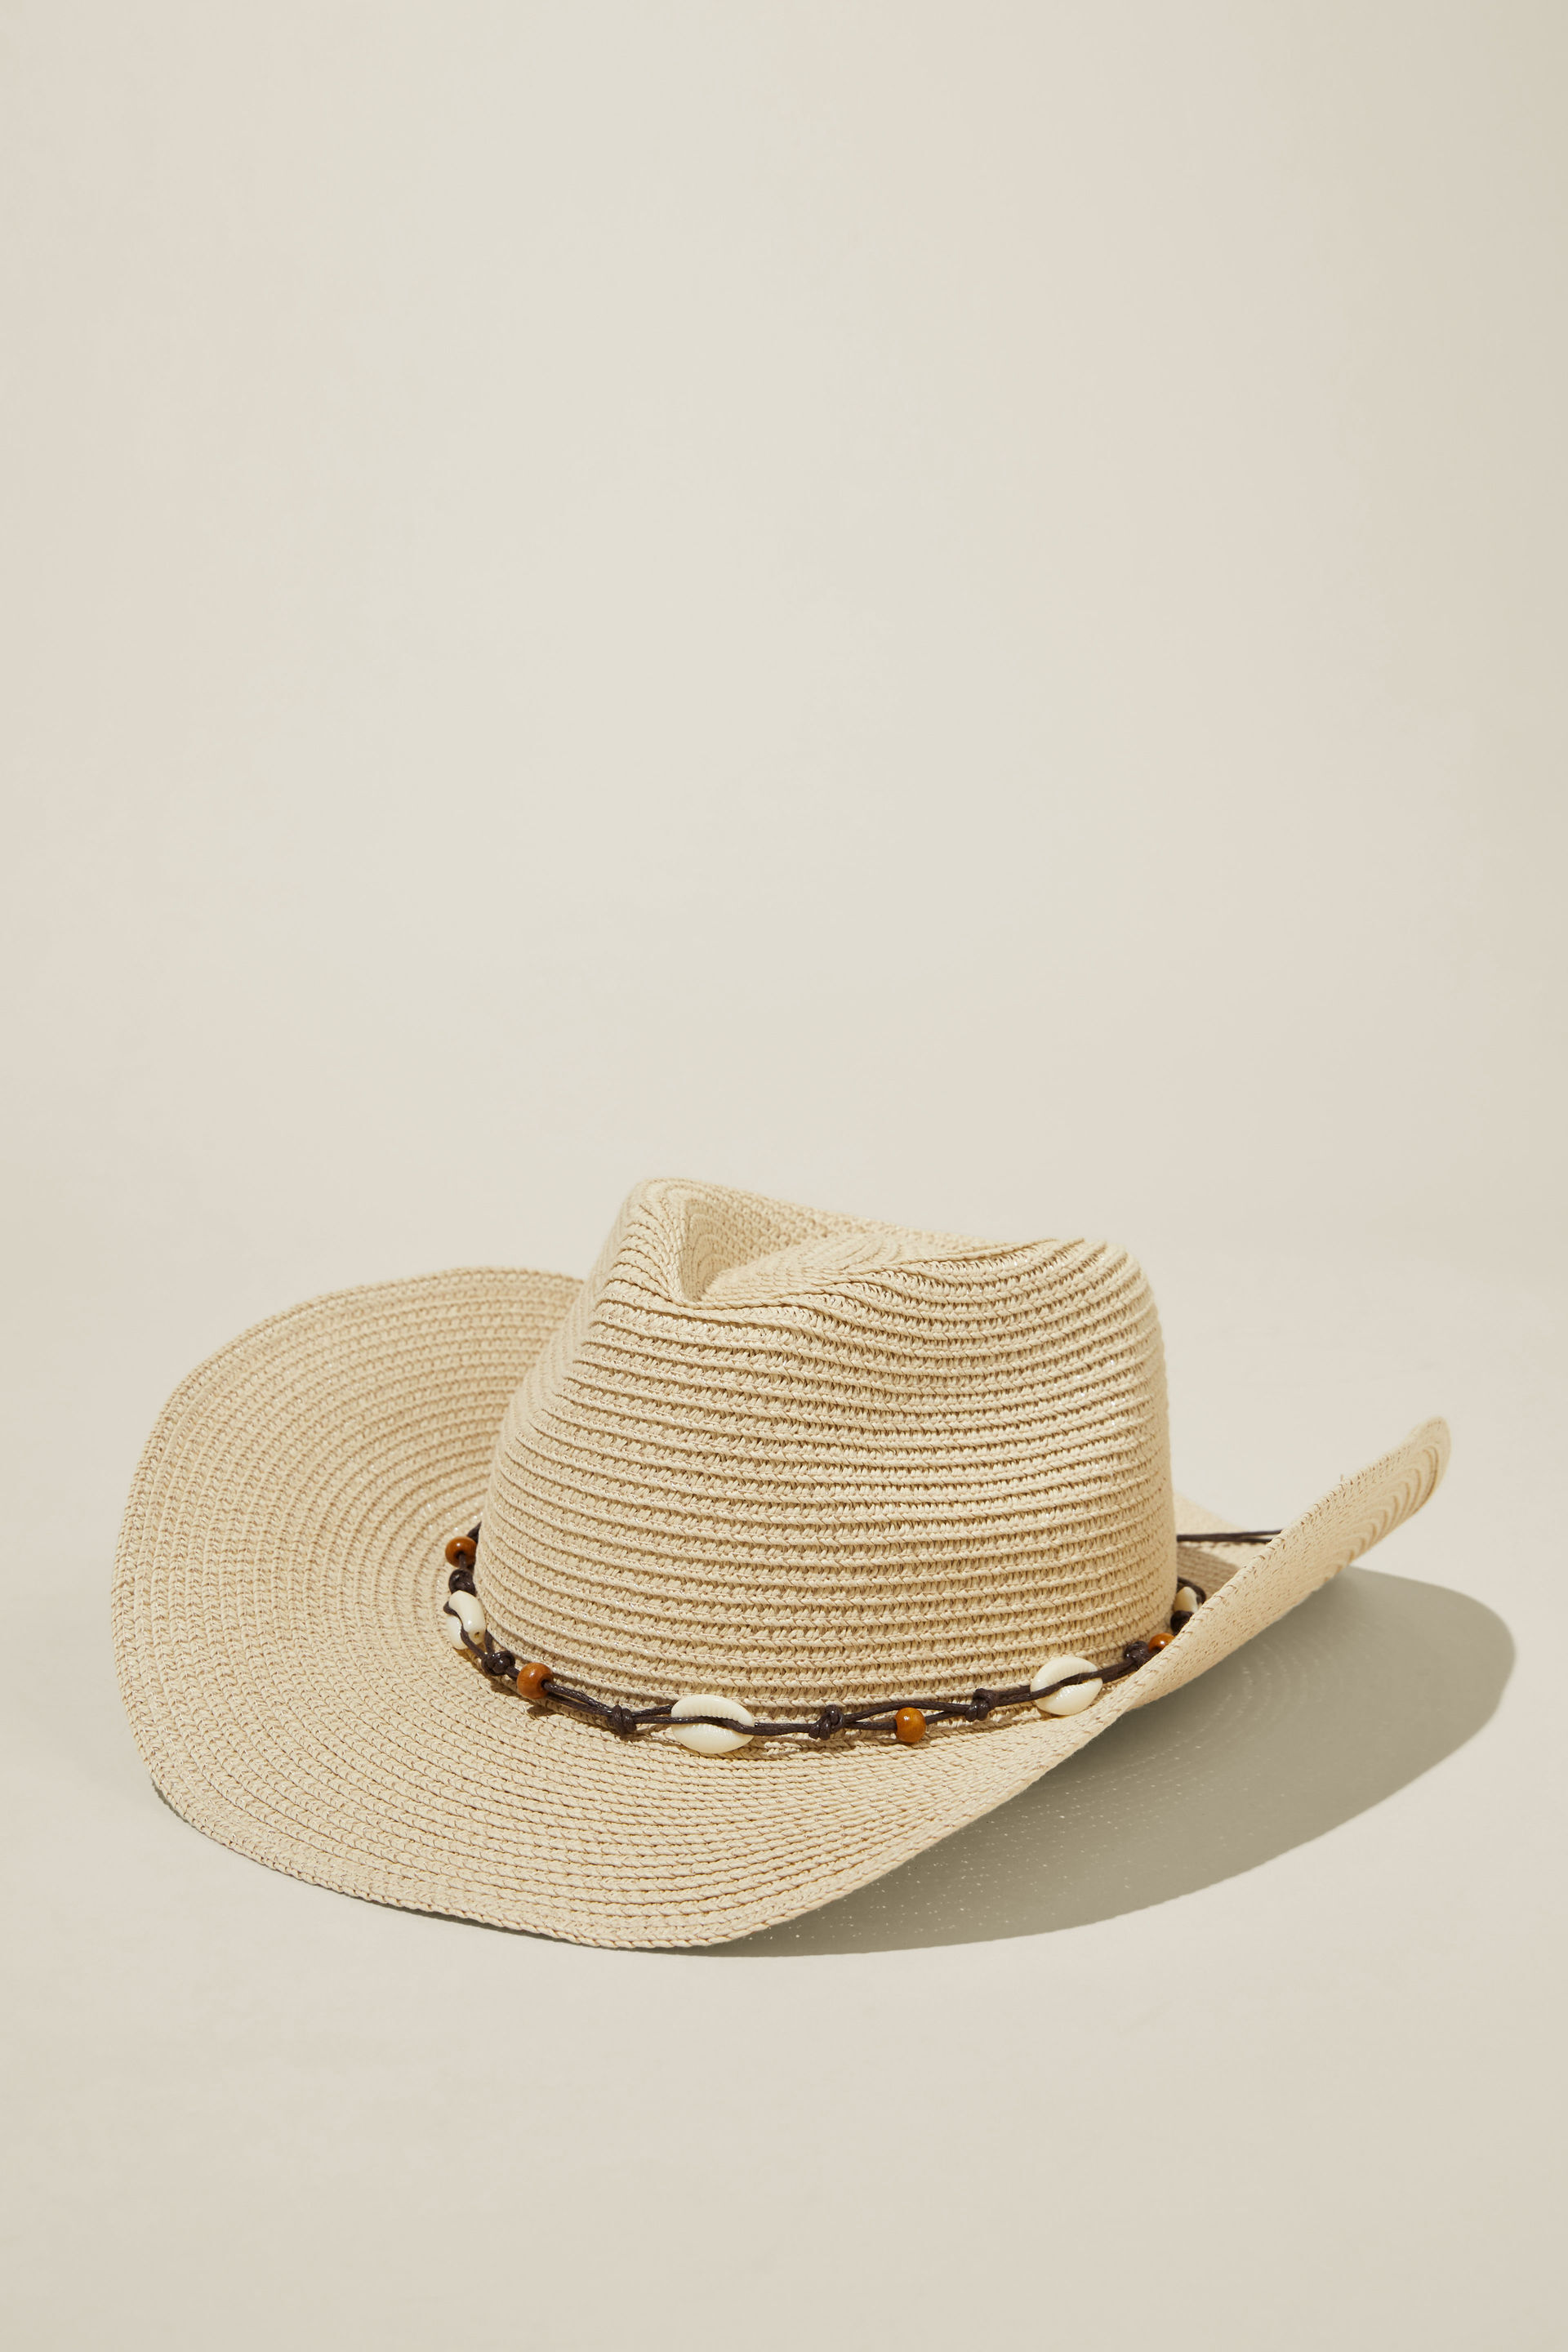 Marley Cowboy Hat